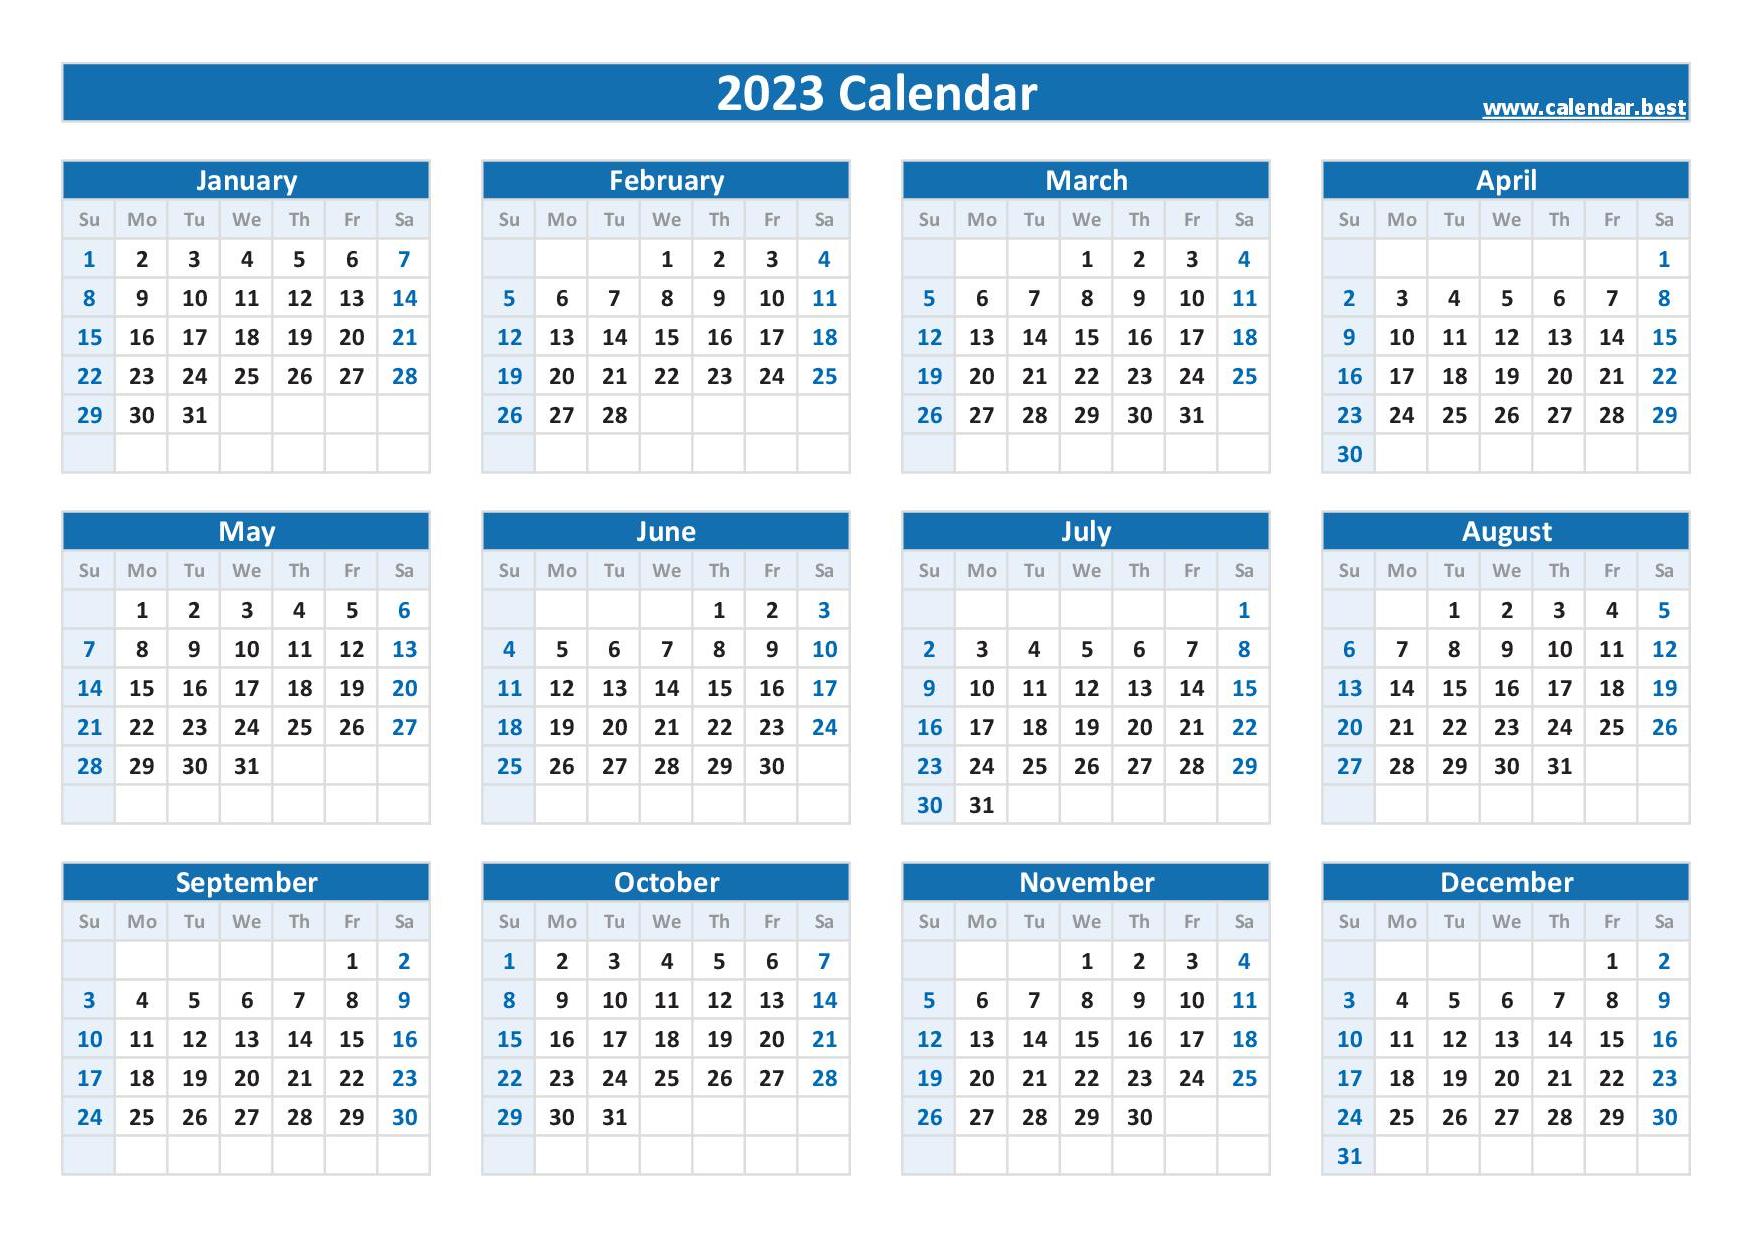 2023 calendar with week numbers